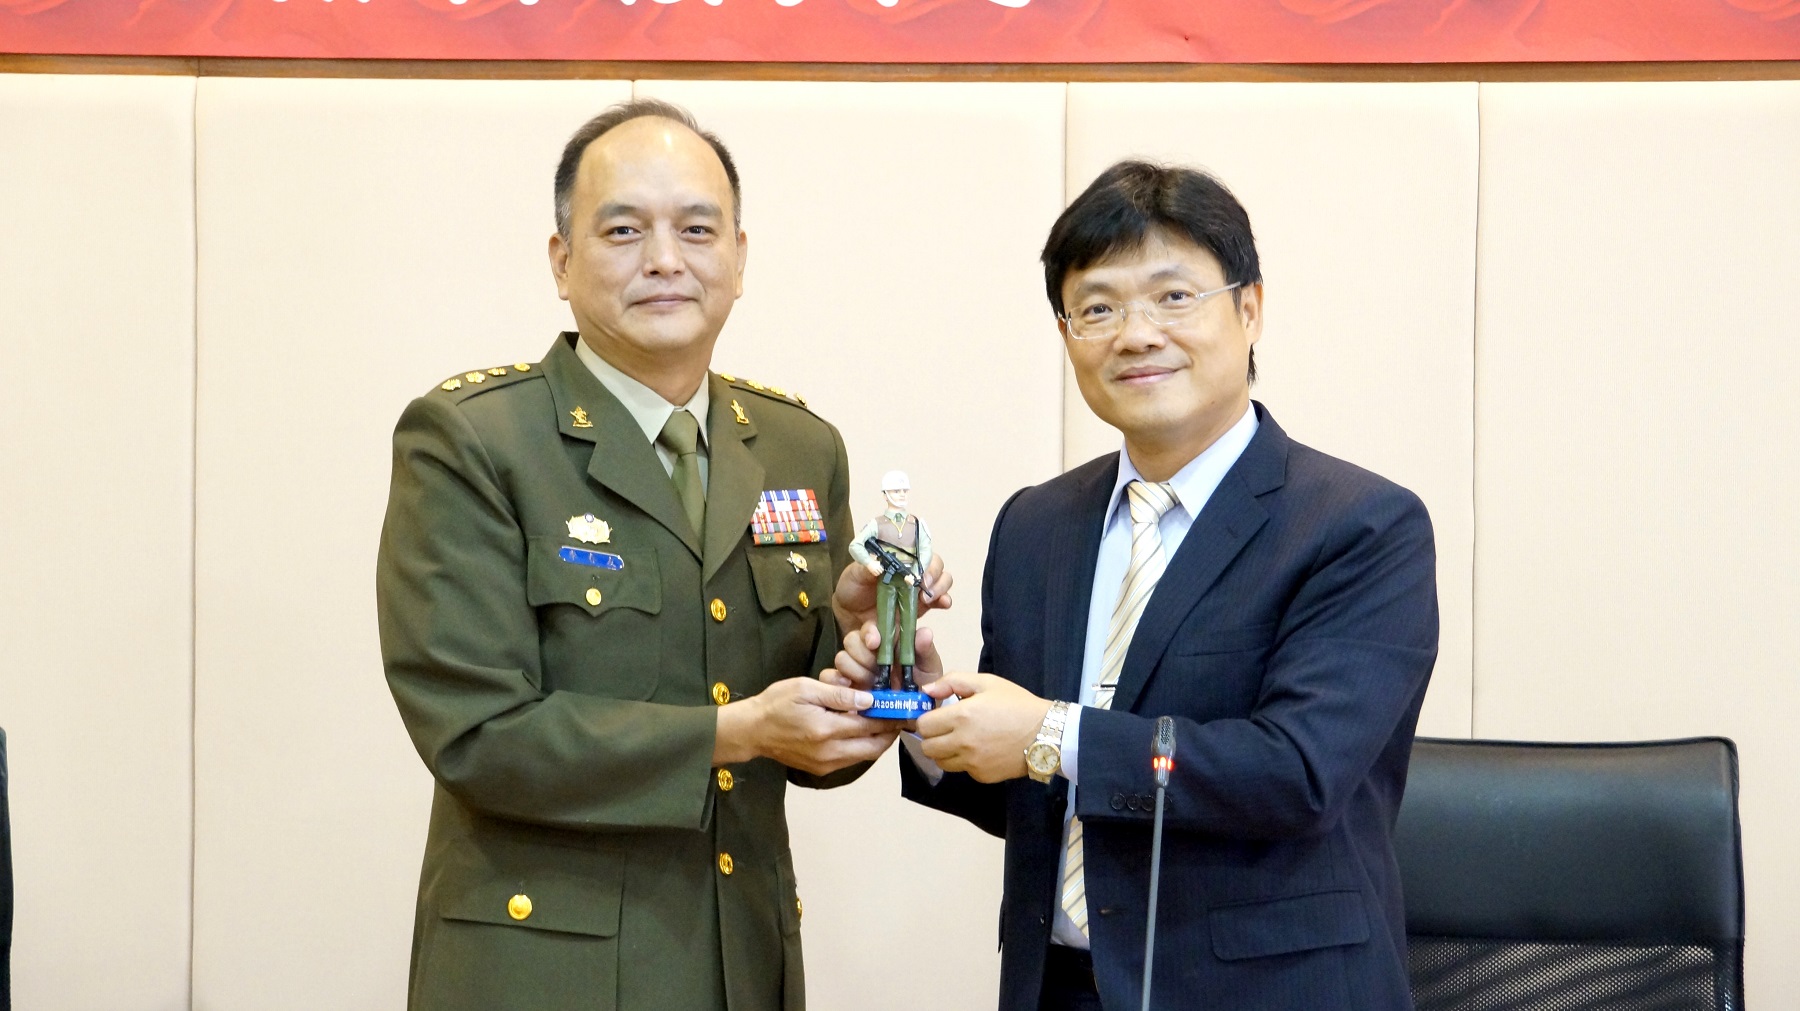 憲兵205指揮部上校李春友（左）致贈憲兵公仔紀念品給艾和昌校長（右）